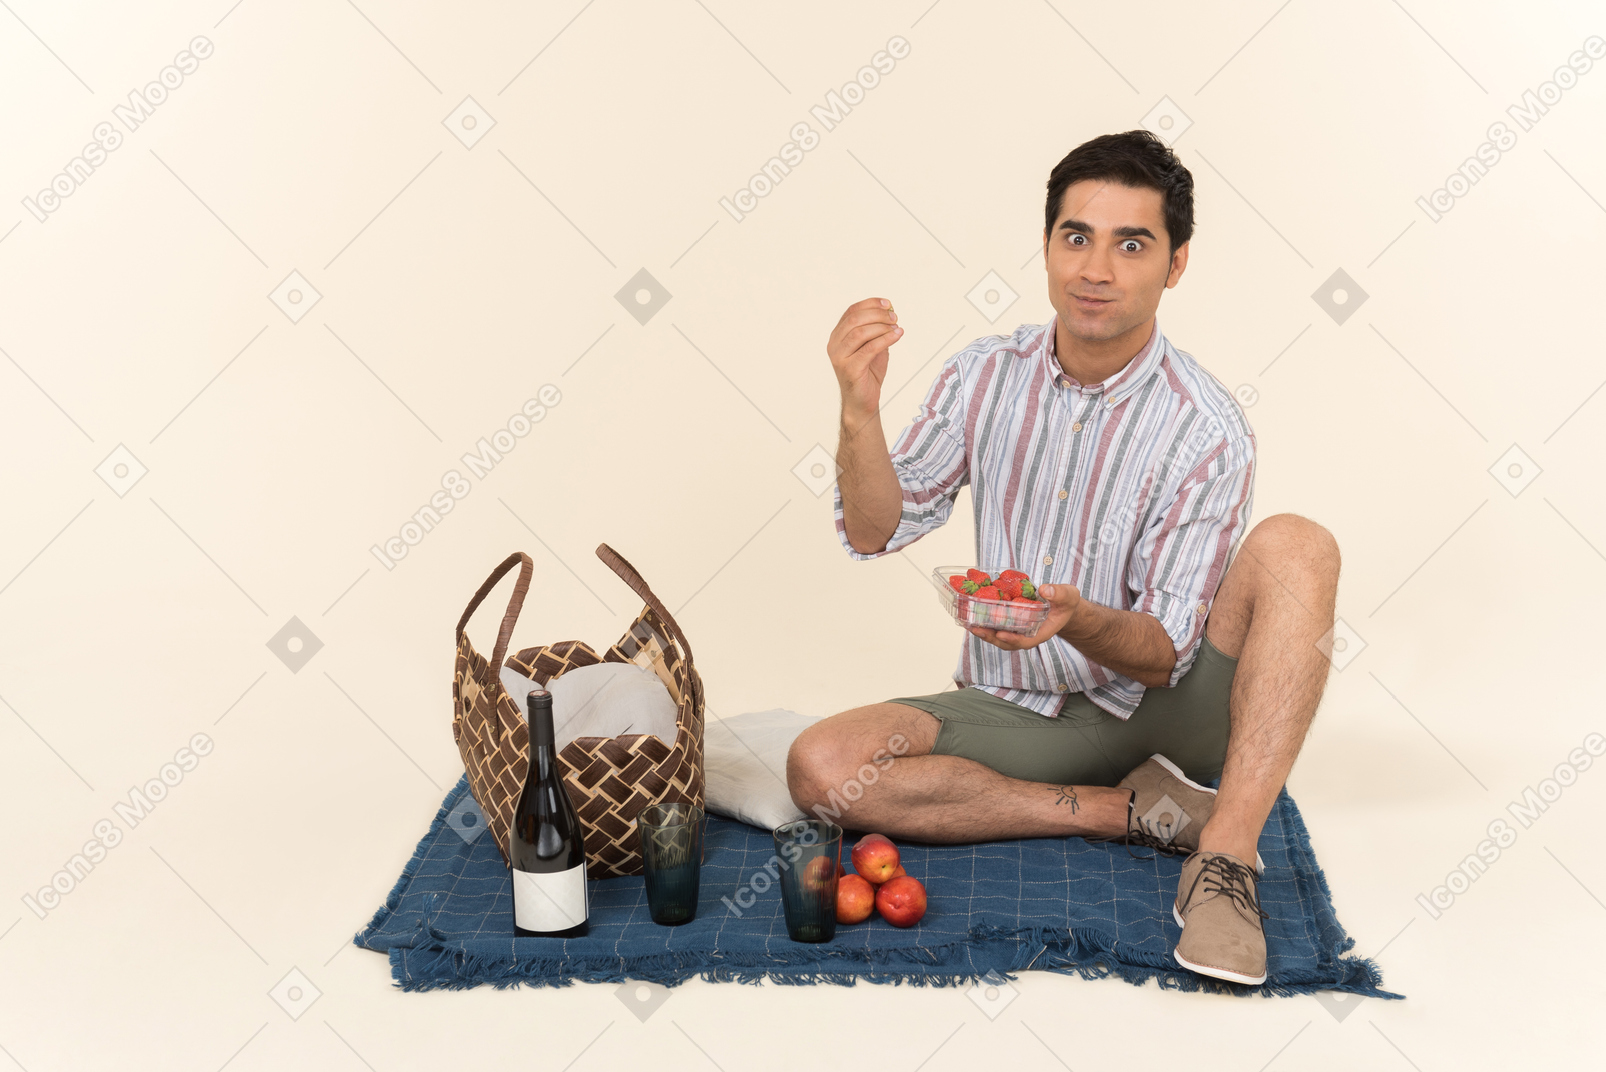 Frutta giovane mangiatrice di uomini caucasica emozionante mentre facendo picnic